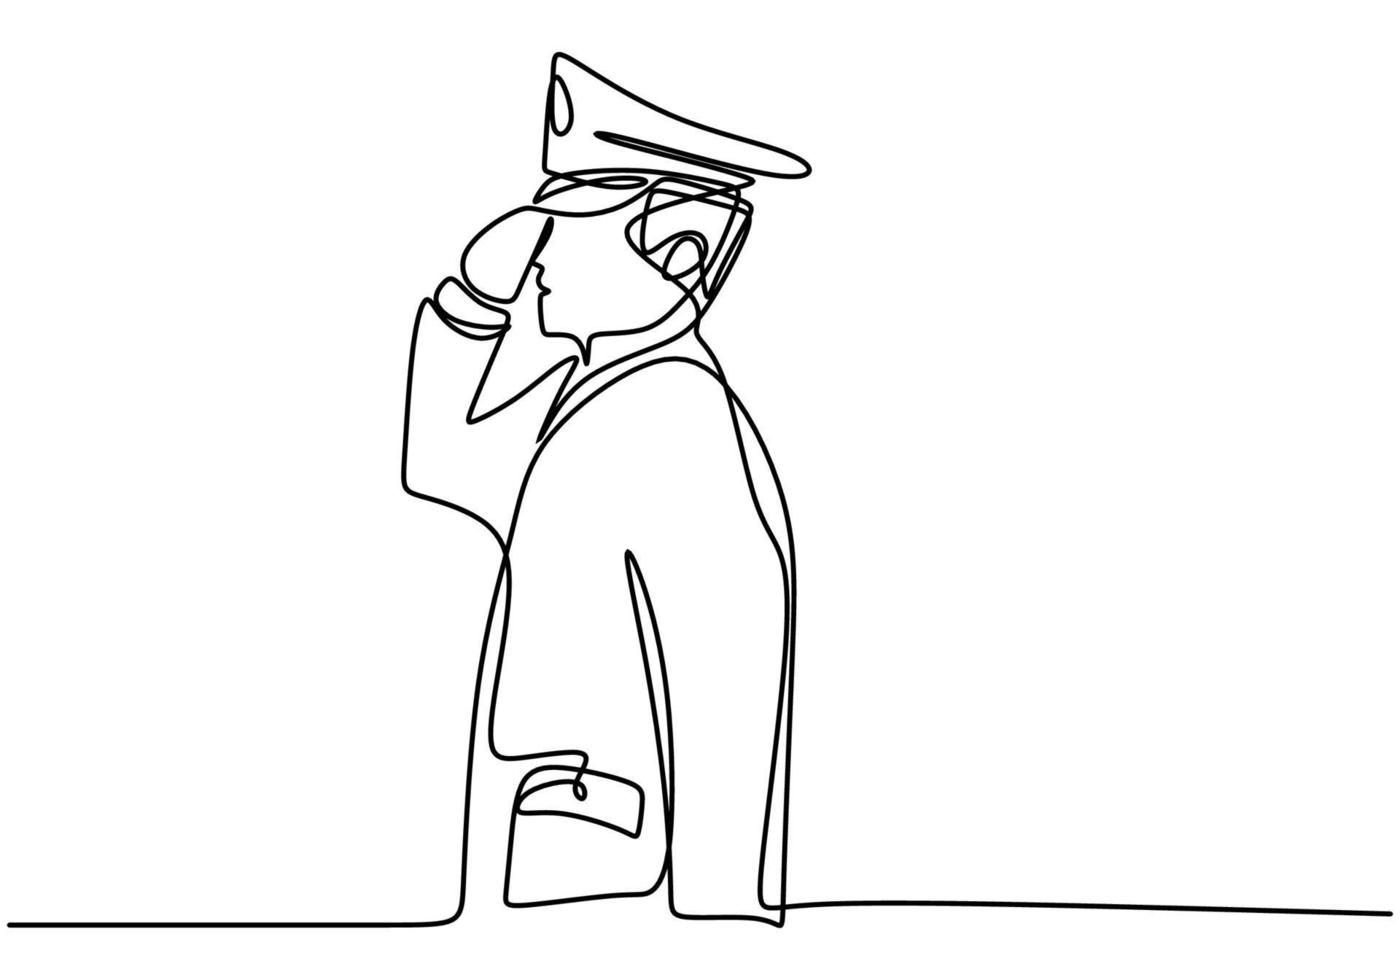 kontinuerlig en enstaka ritning av en polismästare. polis med uniform. vektor